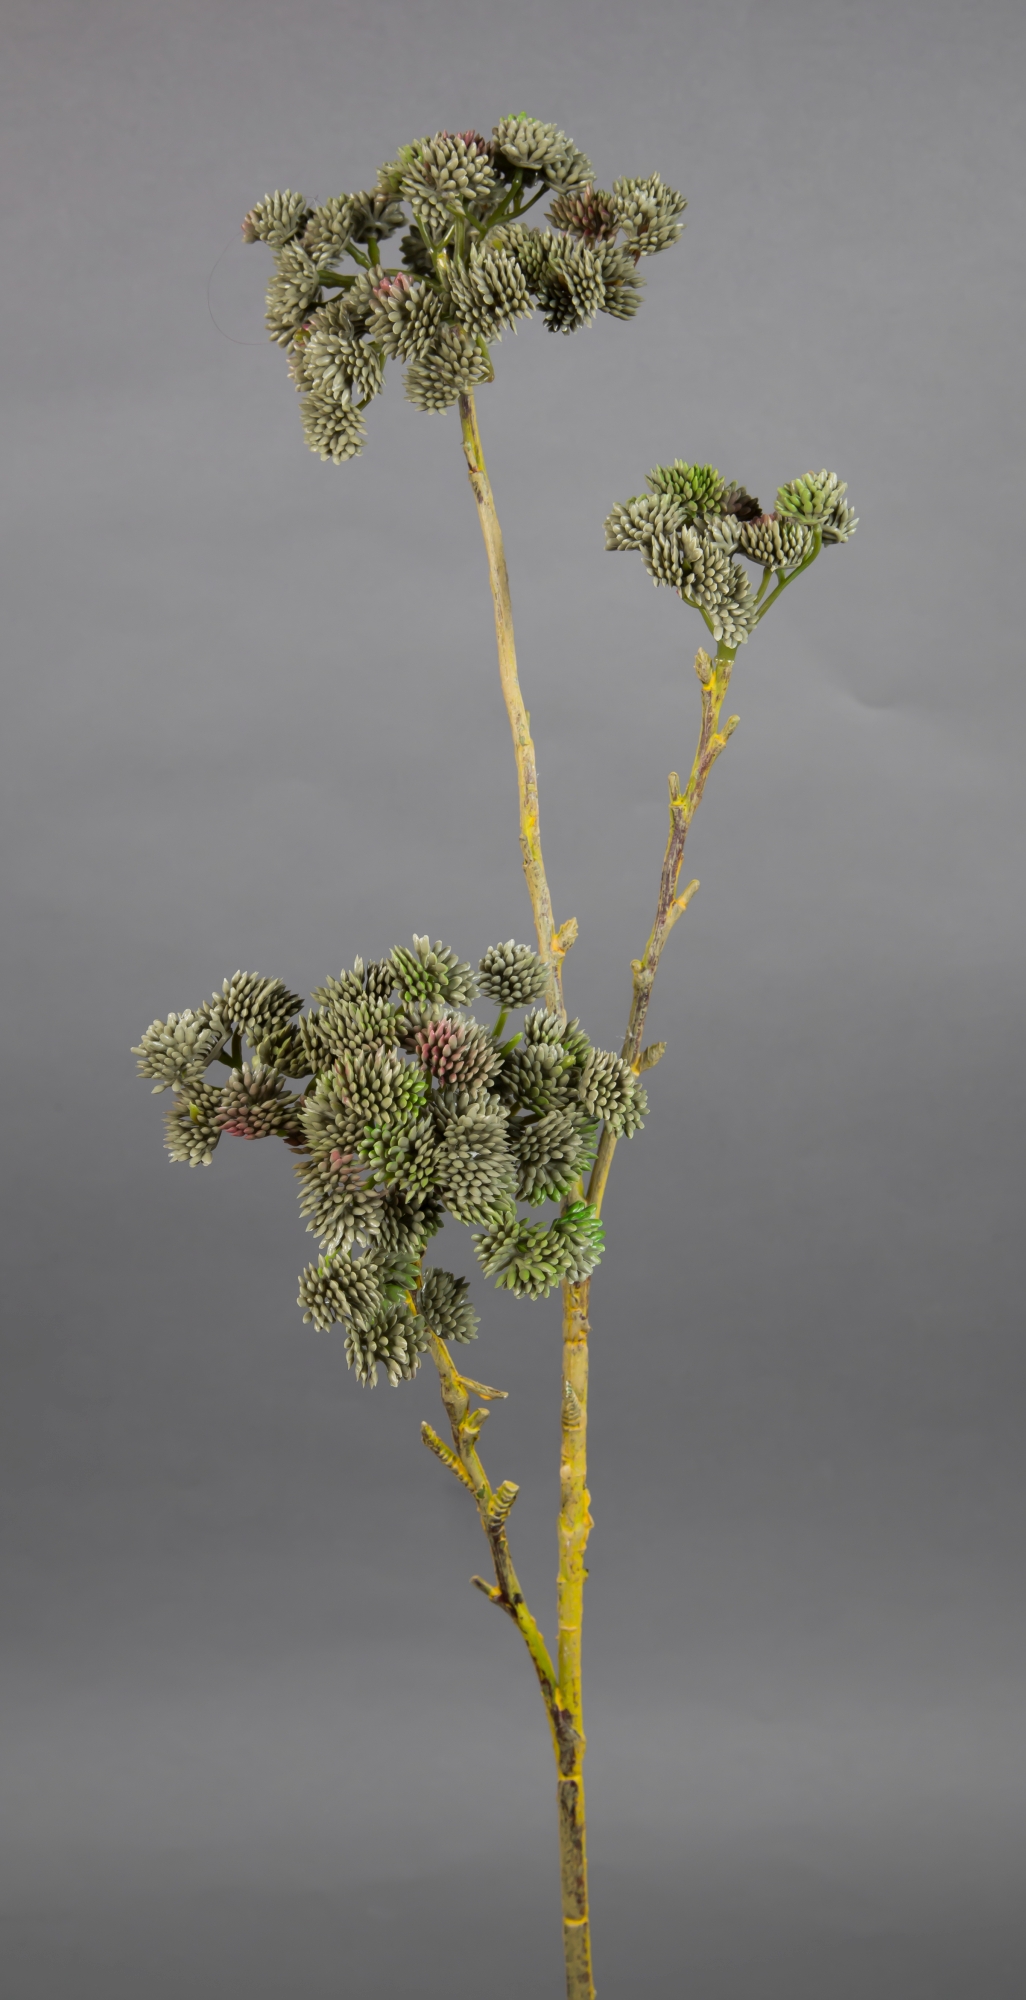 Beerenzweig Natural 76cm grau-grün CG Kunstzweig künstliche Zweige Kunstpflanzen künstliche Beeren